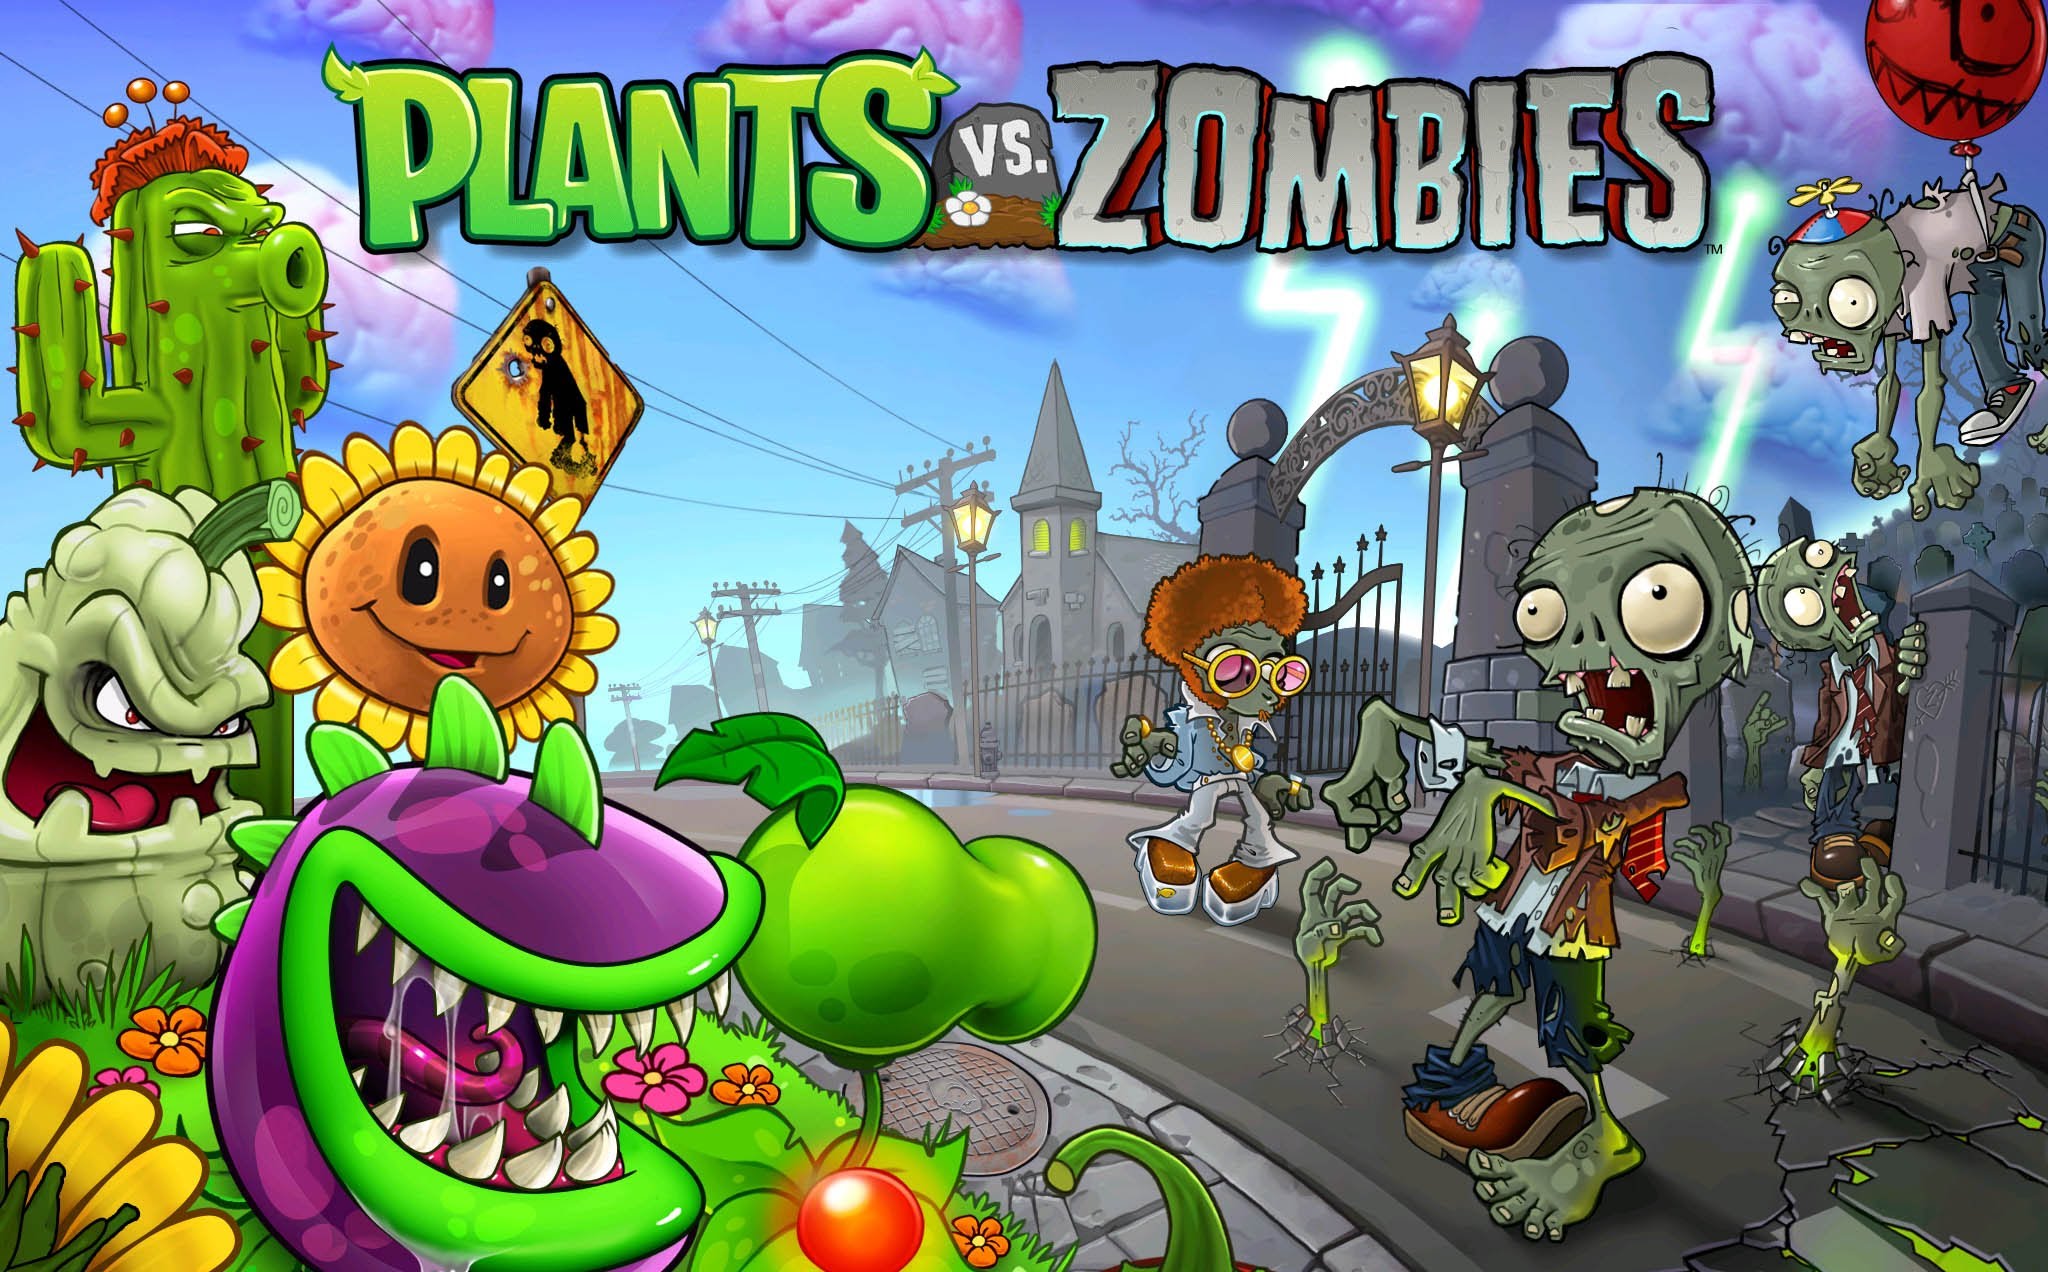 plants versus zombies mac